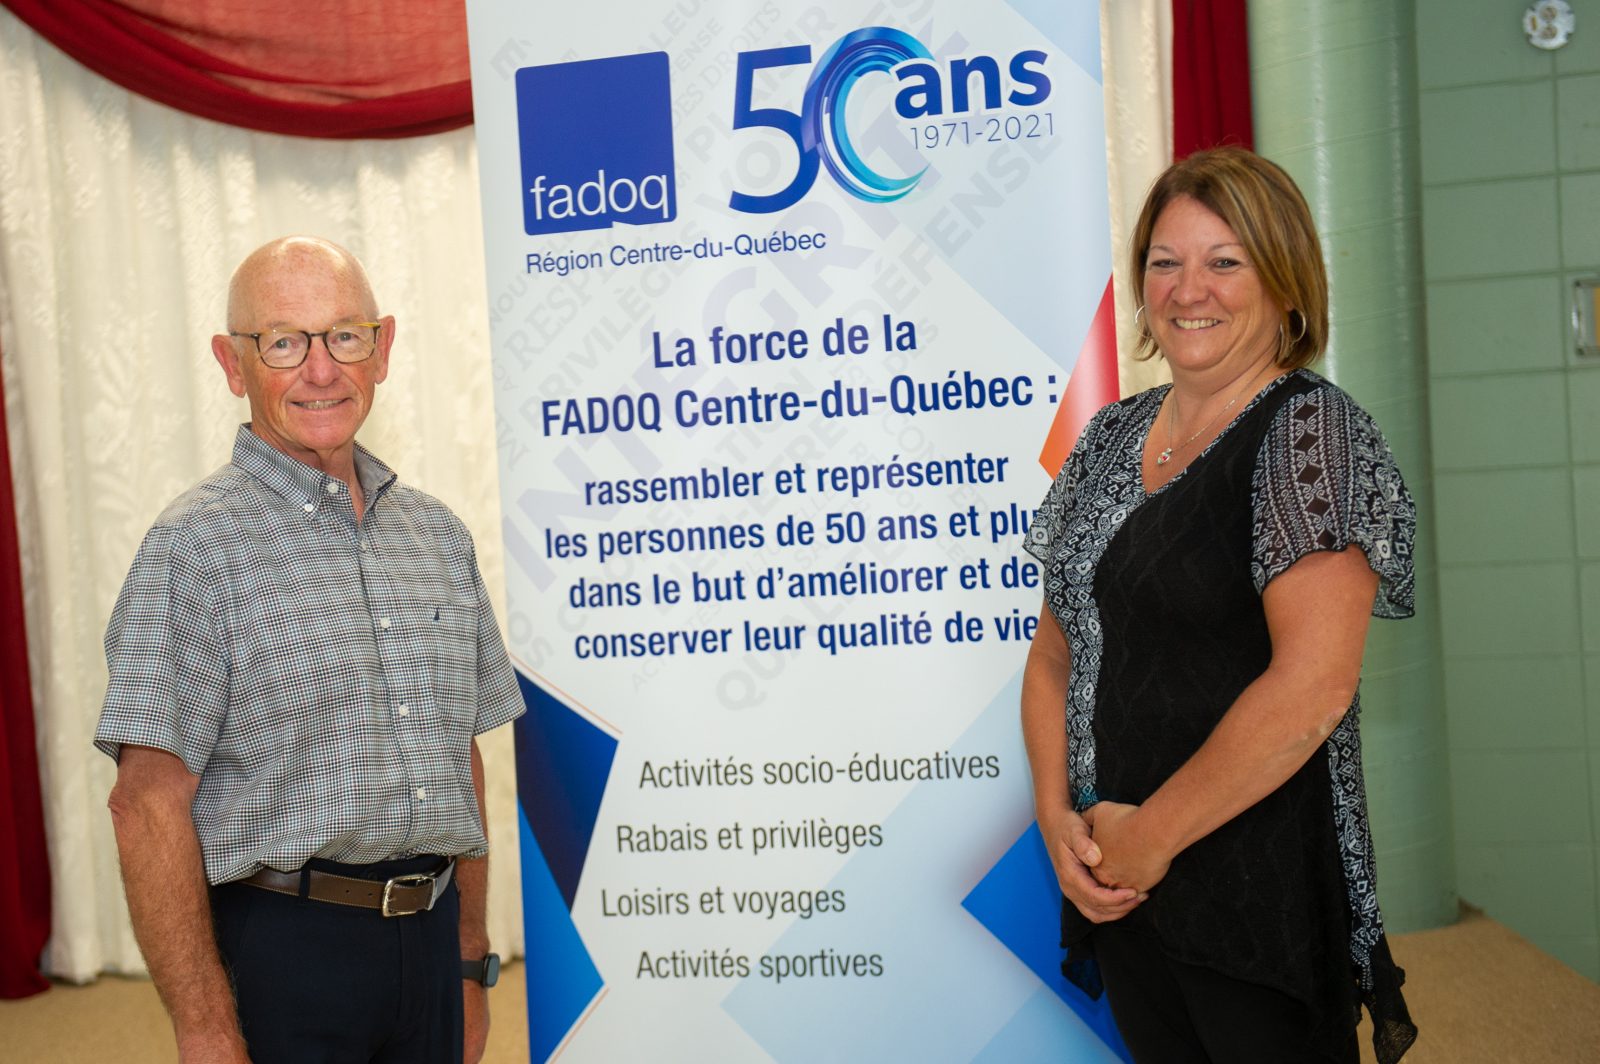 La FADOQ Centre-du-Québec, 50 ans d’histoire